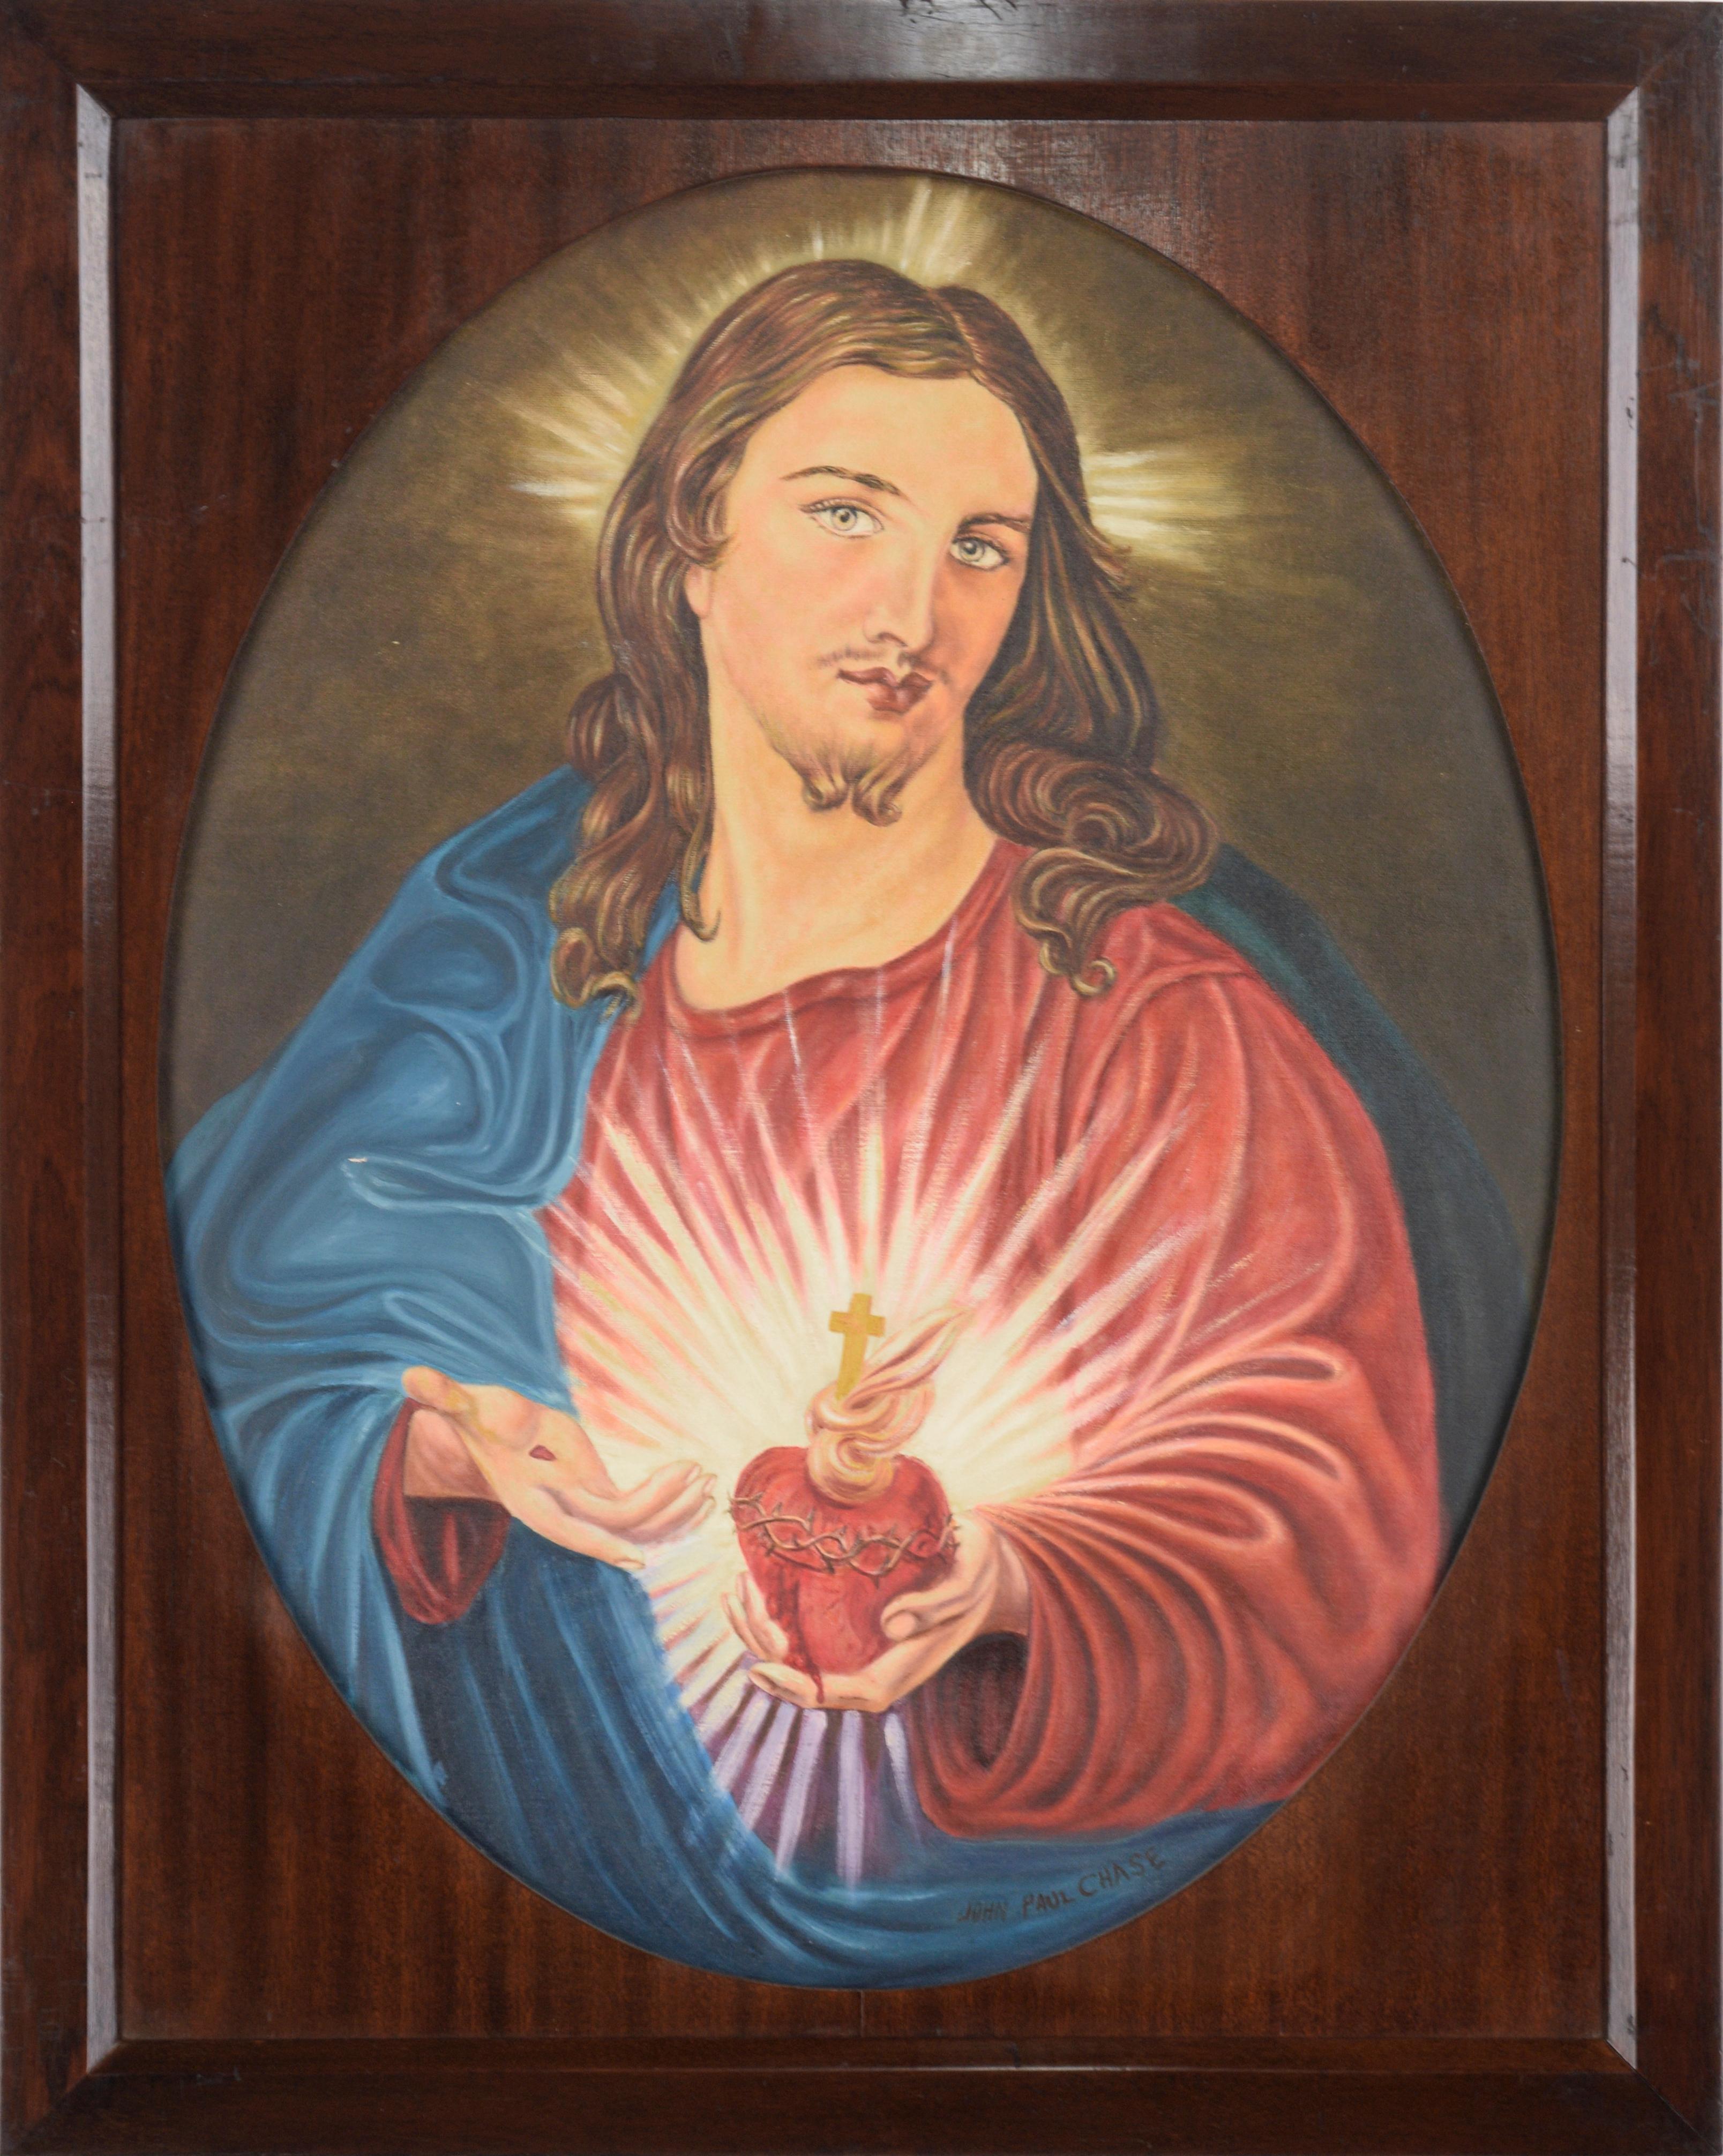 Portrait de Jésus et du Sacré-Cœur par John Paul Chase (Dillinger Associate)